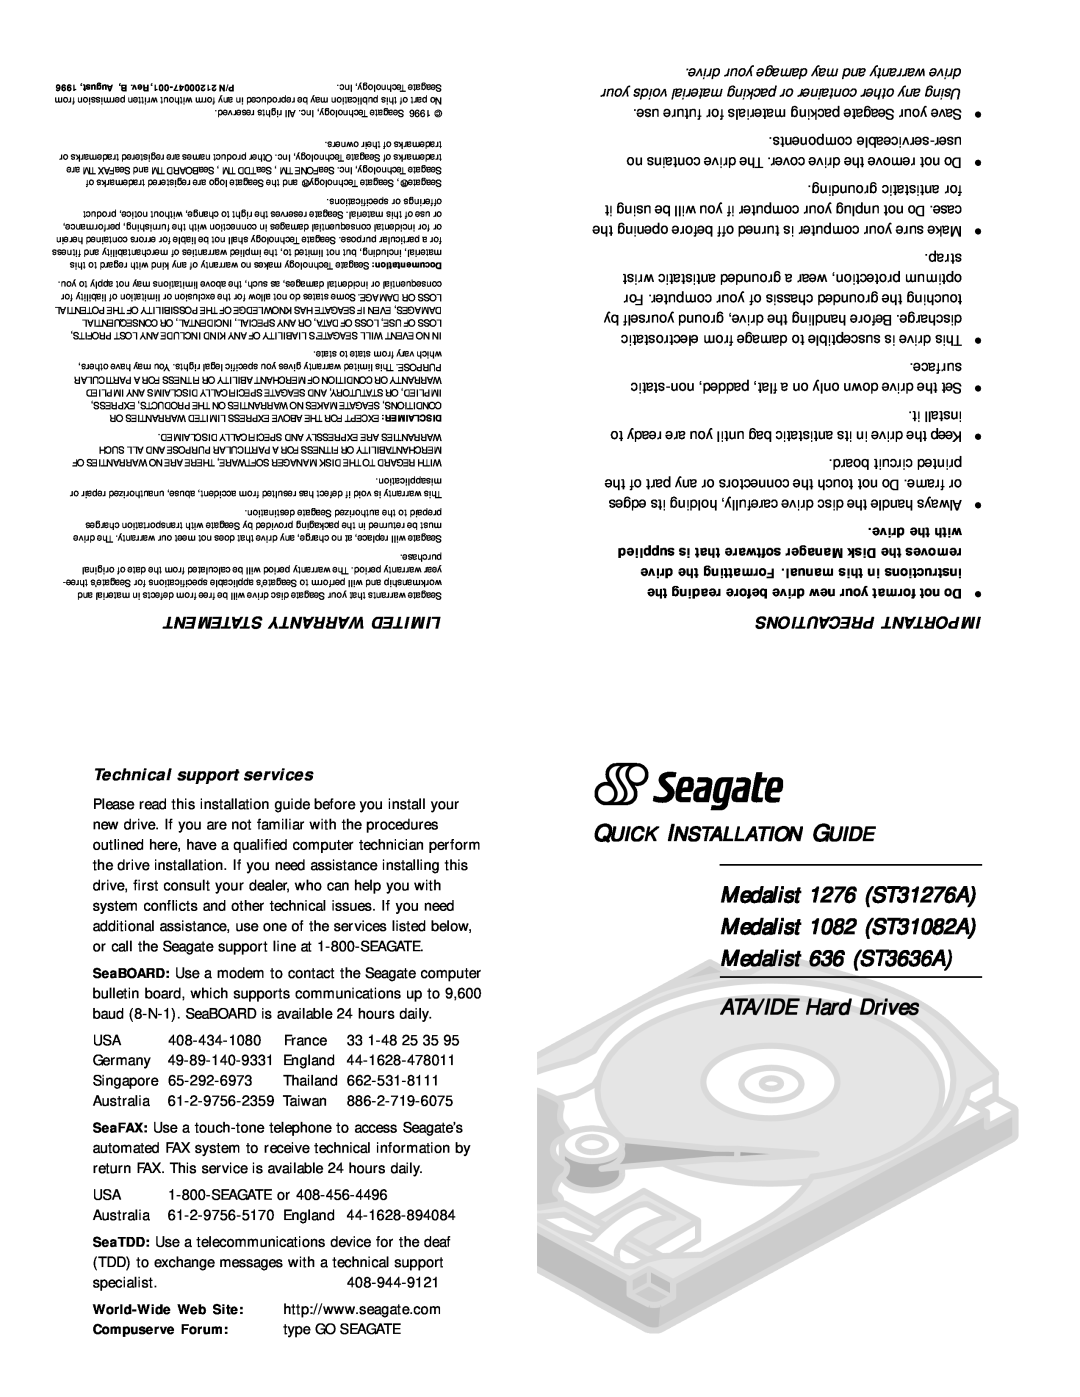 Seagate ST31276A warranty World-Wide Web Site, Compuserve Forum, ATA/IDE Hard Drives, Quick Installation Guide, strap 